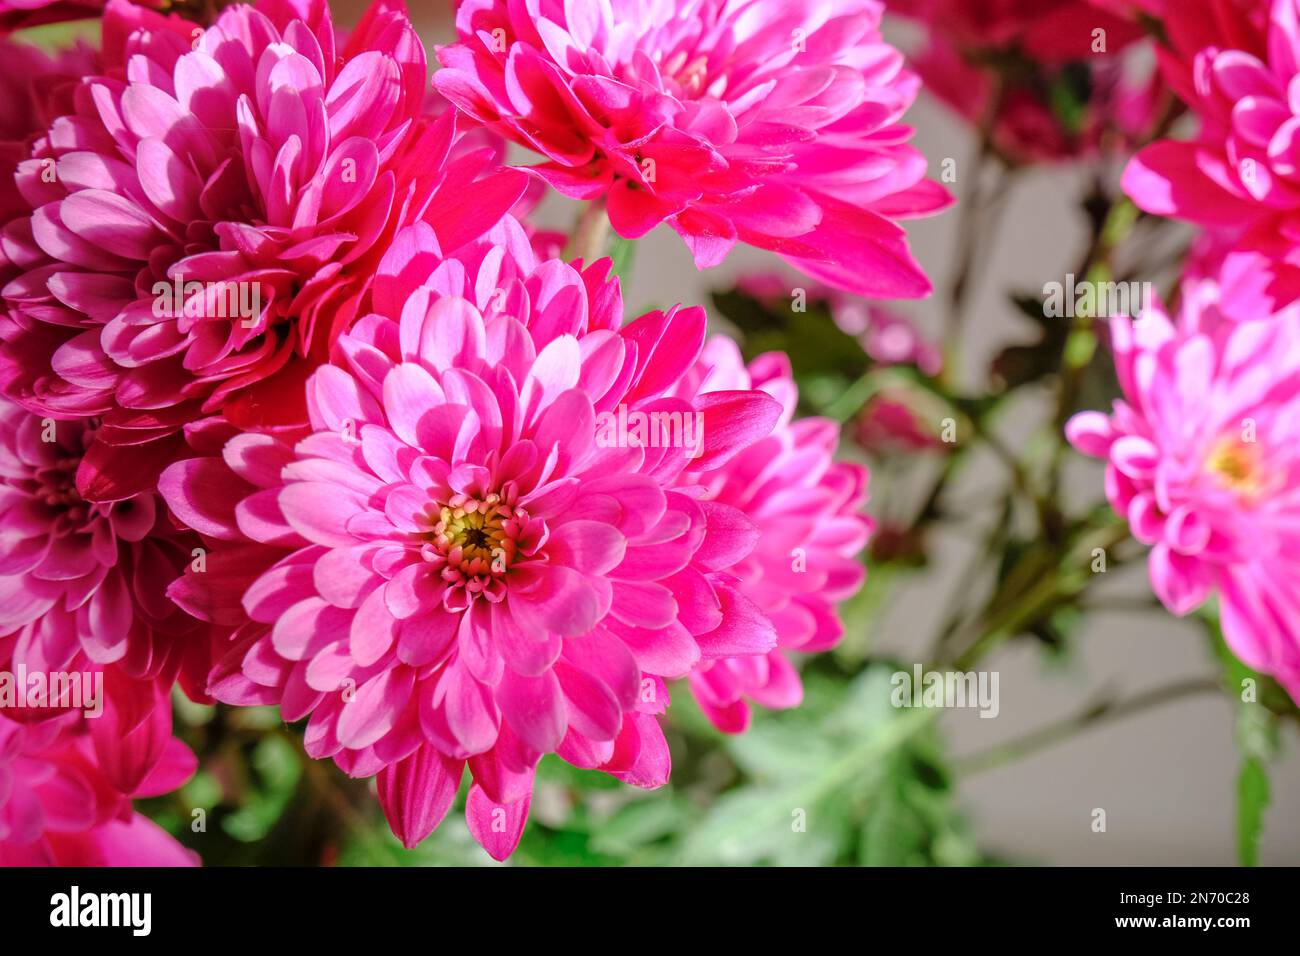 bouquet de fleurs de chrysanthème rose en gros plan. Fond floral. Carte postale. Copier l'espace. Banque D'Images